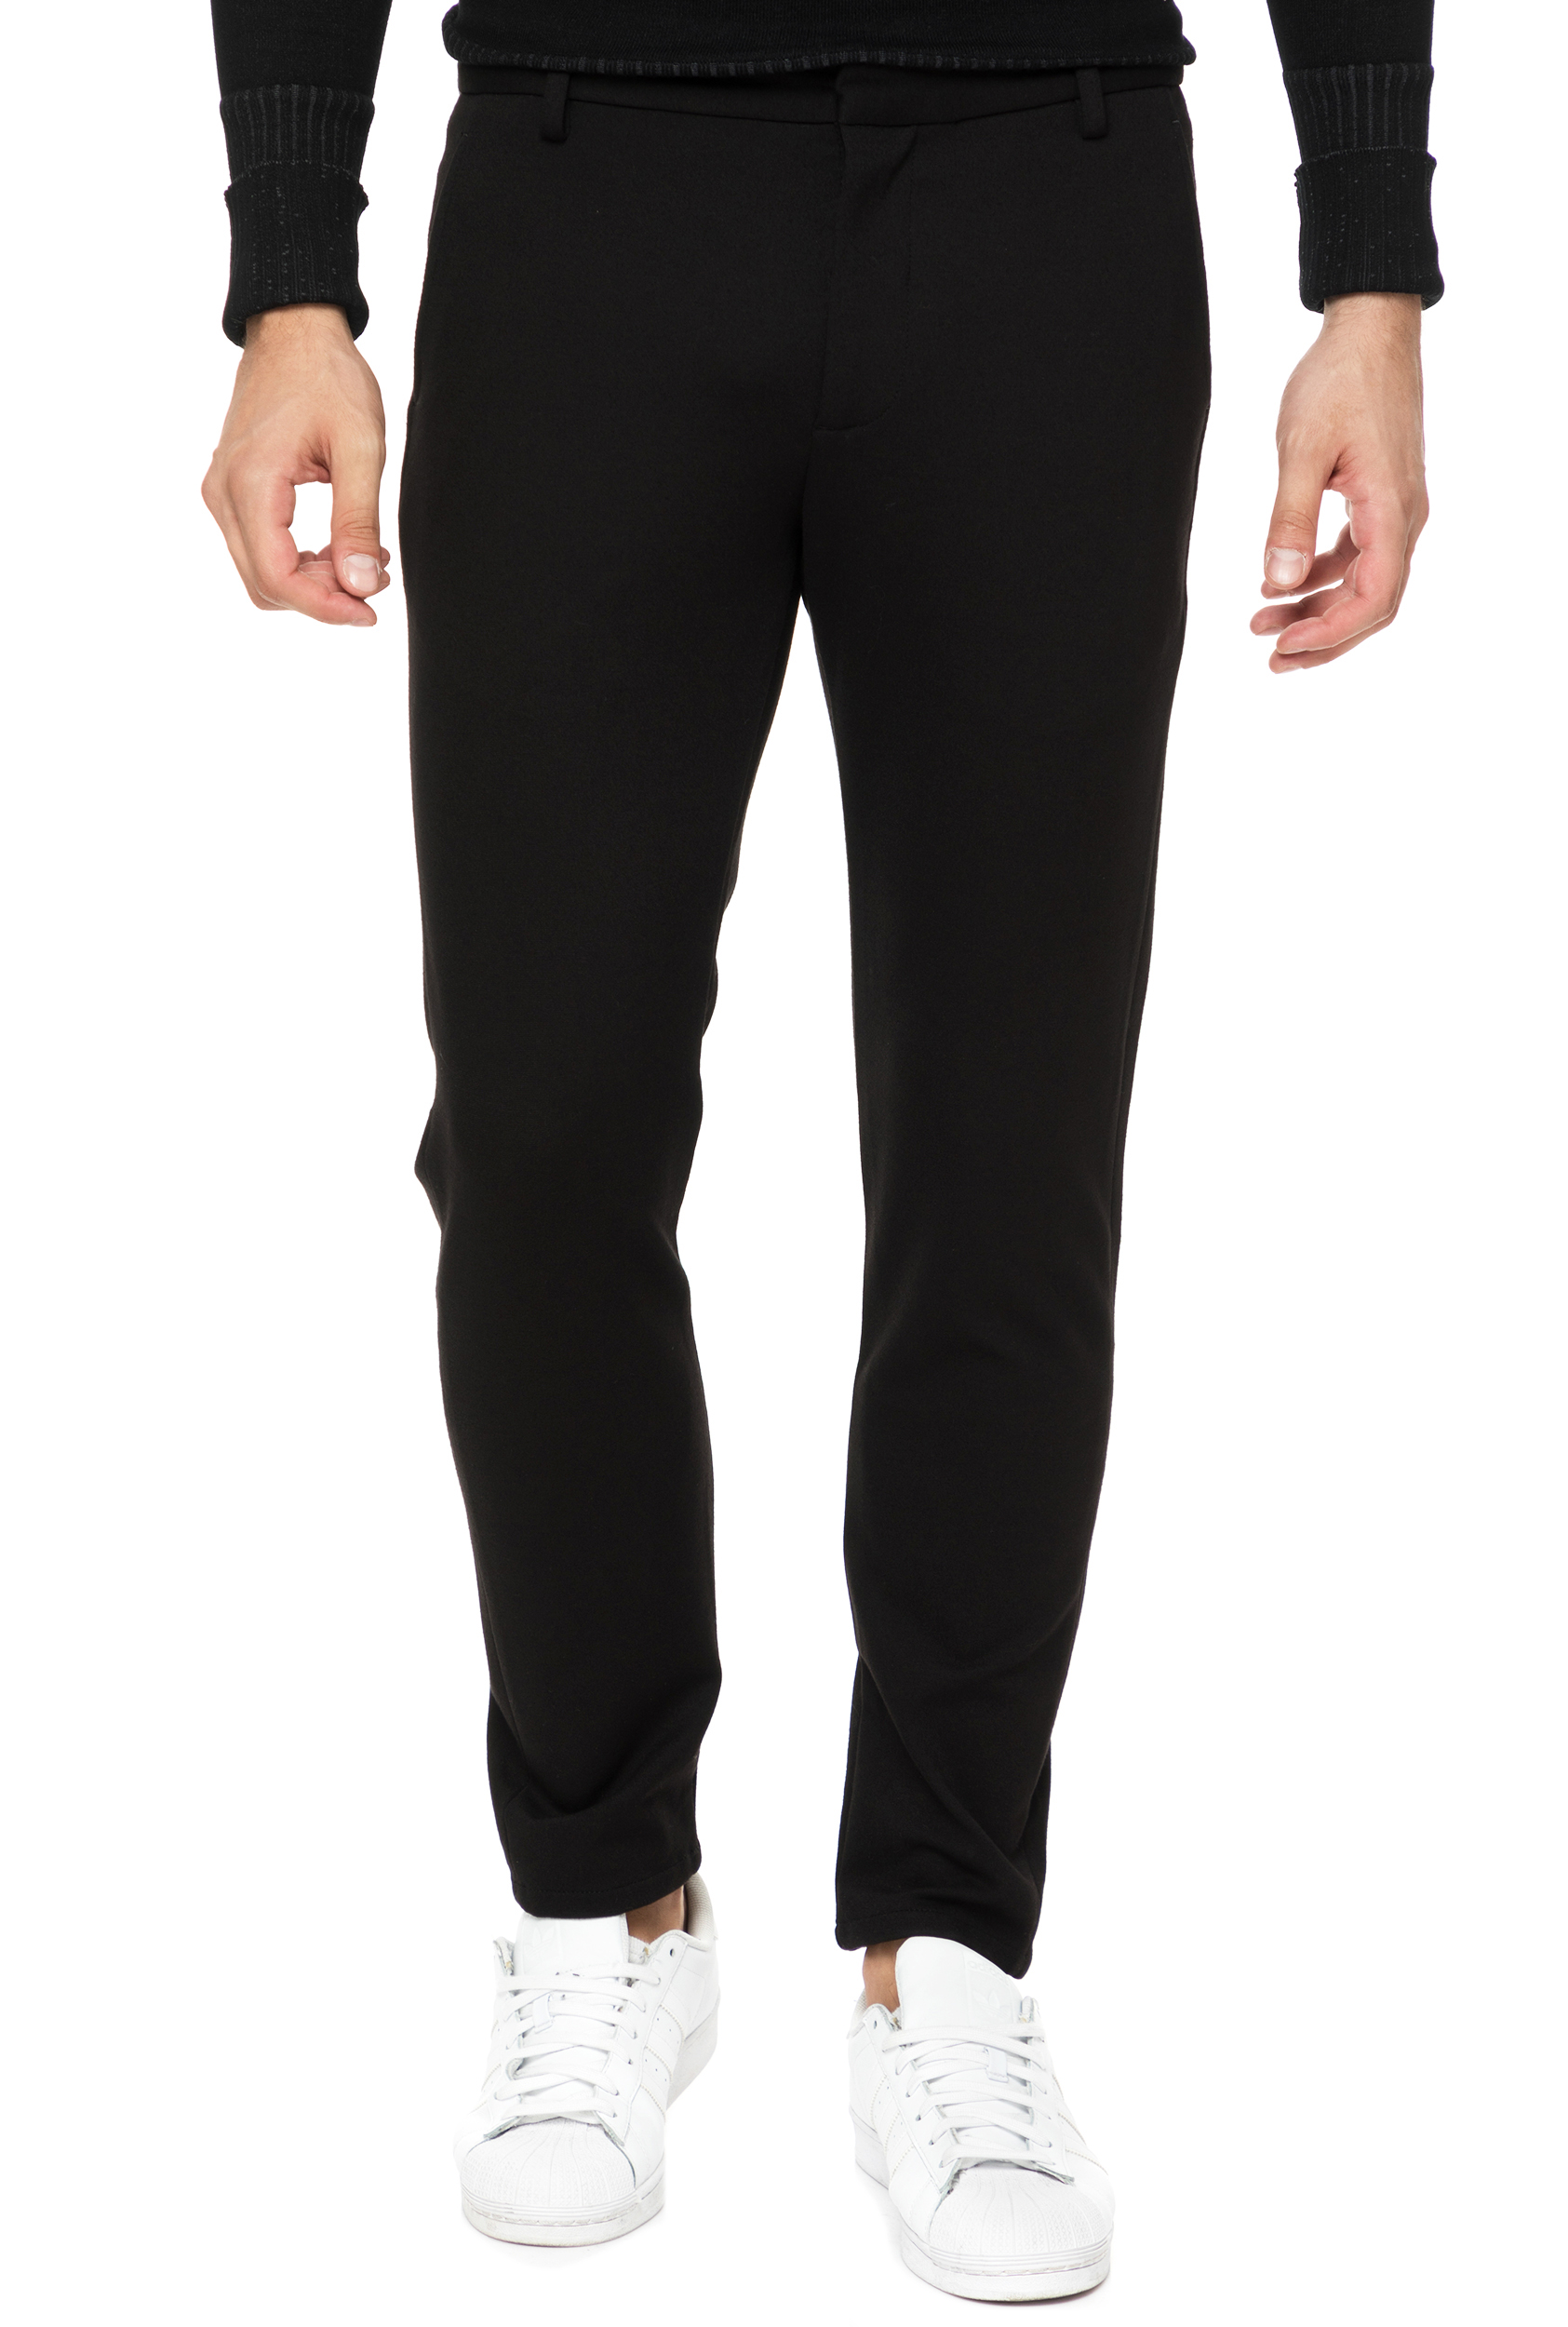 Ανδρικά/Ρούχα/Παντελόνια/Chinos SSEINSE - Ανδρικό chino παντελόνι SSEINSE μαύρο